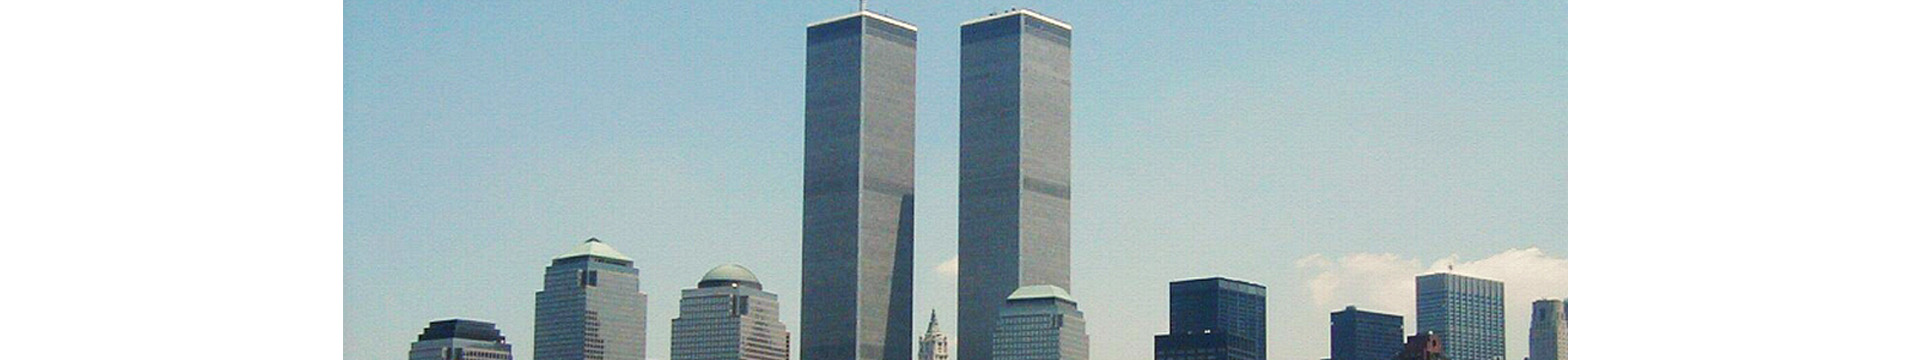 WTC1